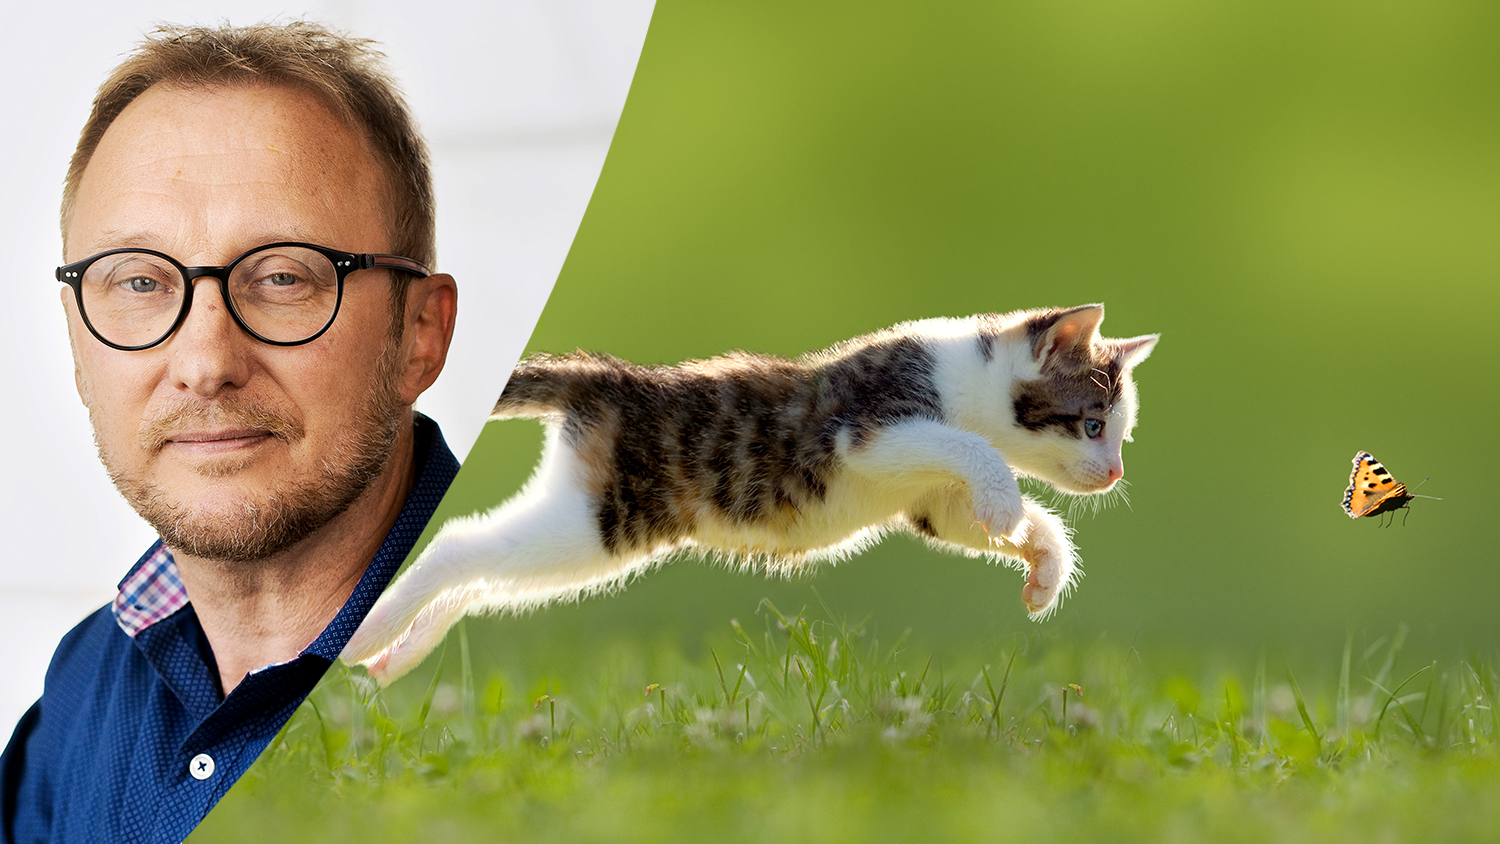 Montage av porträttbild på Bengt Johansson och bild på katt som jagar fjäril.